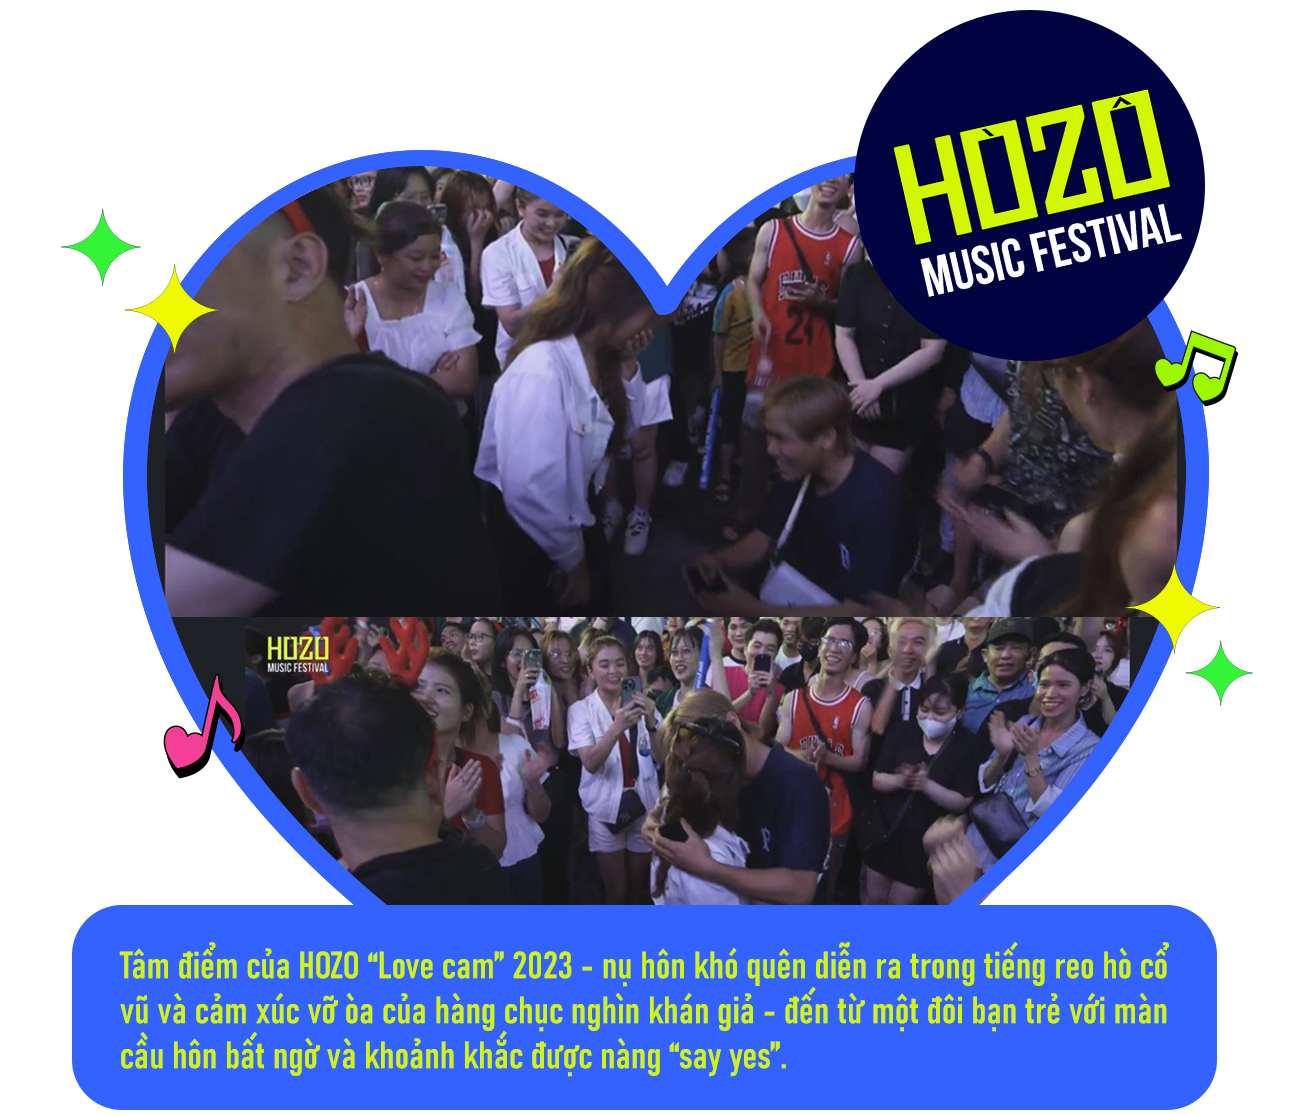 HOZO 2023 - khi âm nhạc, tình yêu và những trải nghiệm của “Hệ sinh thái lễ hội” khó quên cùng “bắt tay” chinh phục 200 nghìn khán giả - Ảnh 9.